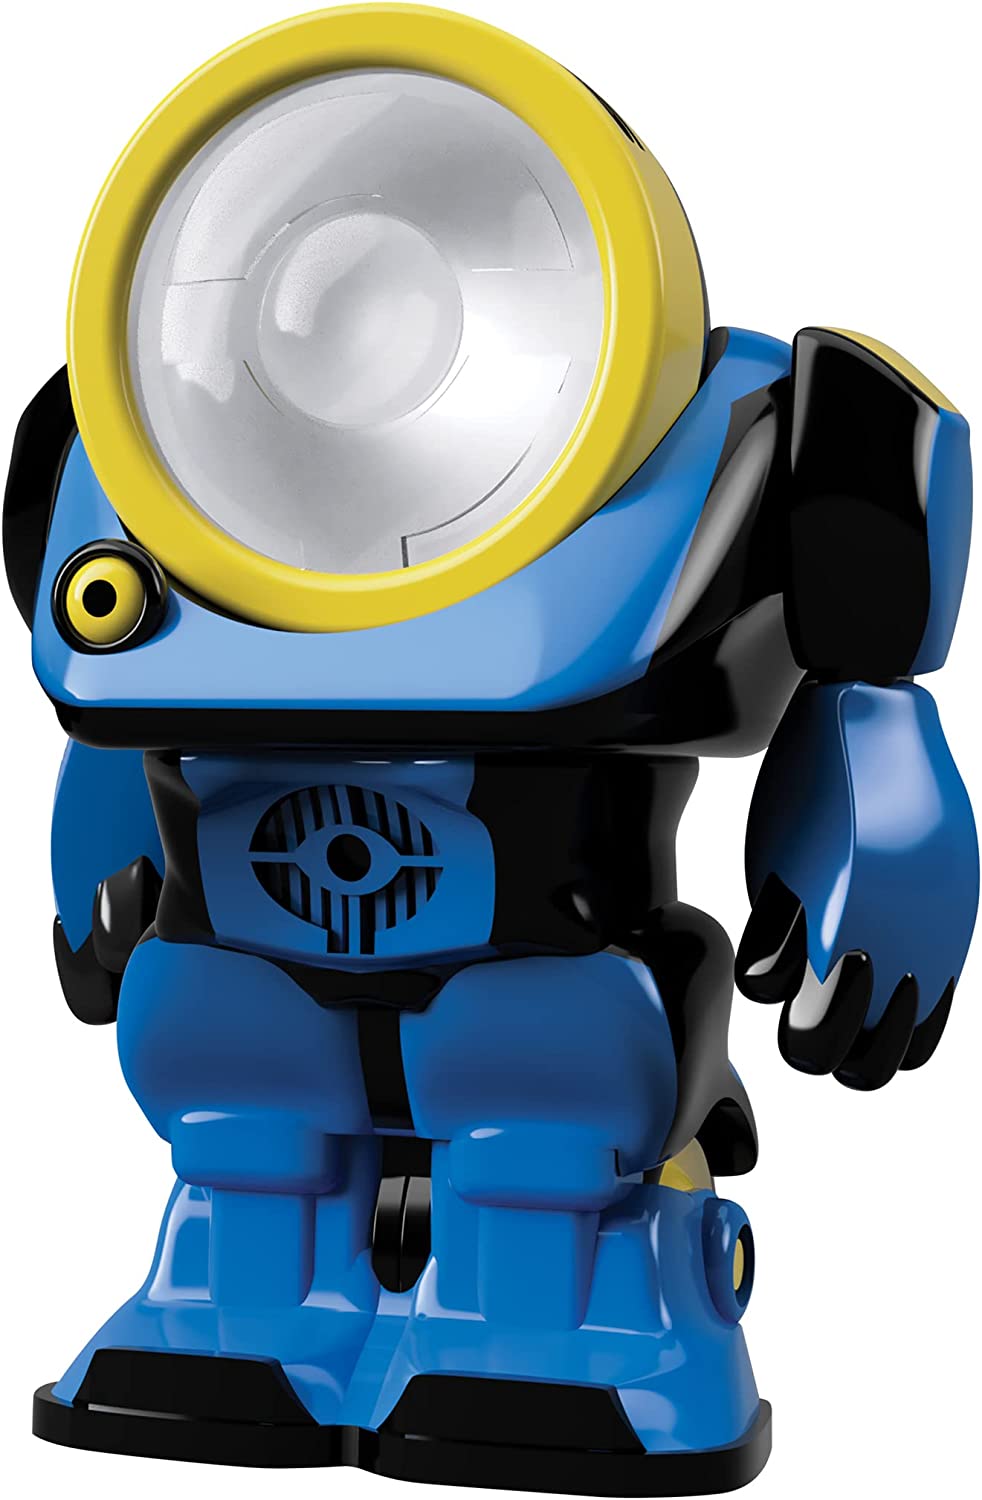 SpyBots SpotBot – Sicherheitsroboter! LED-Suchlicht. Lustiges Gadget-Spielzeug für Jungen